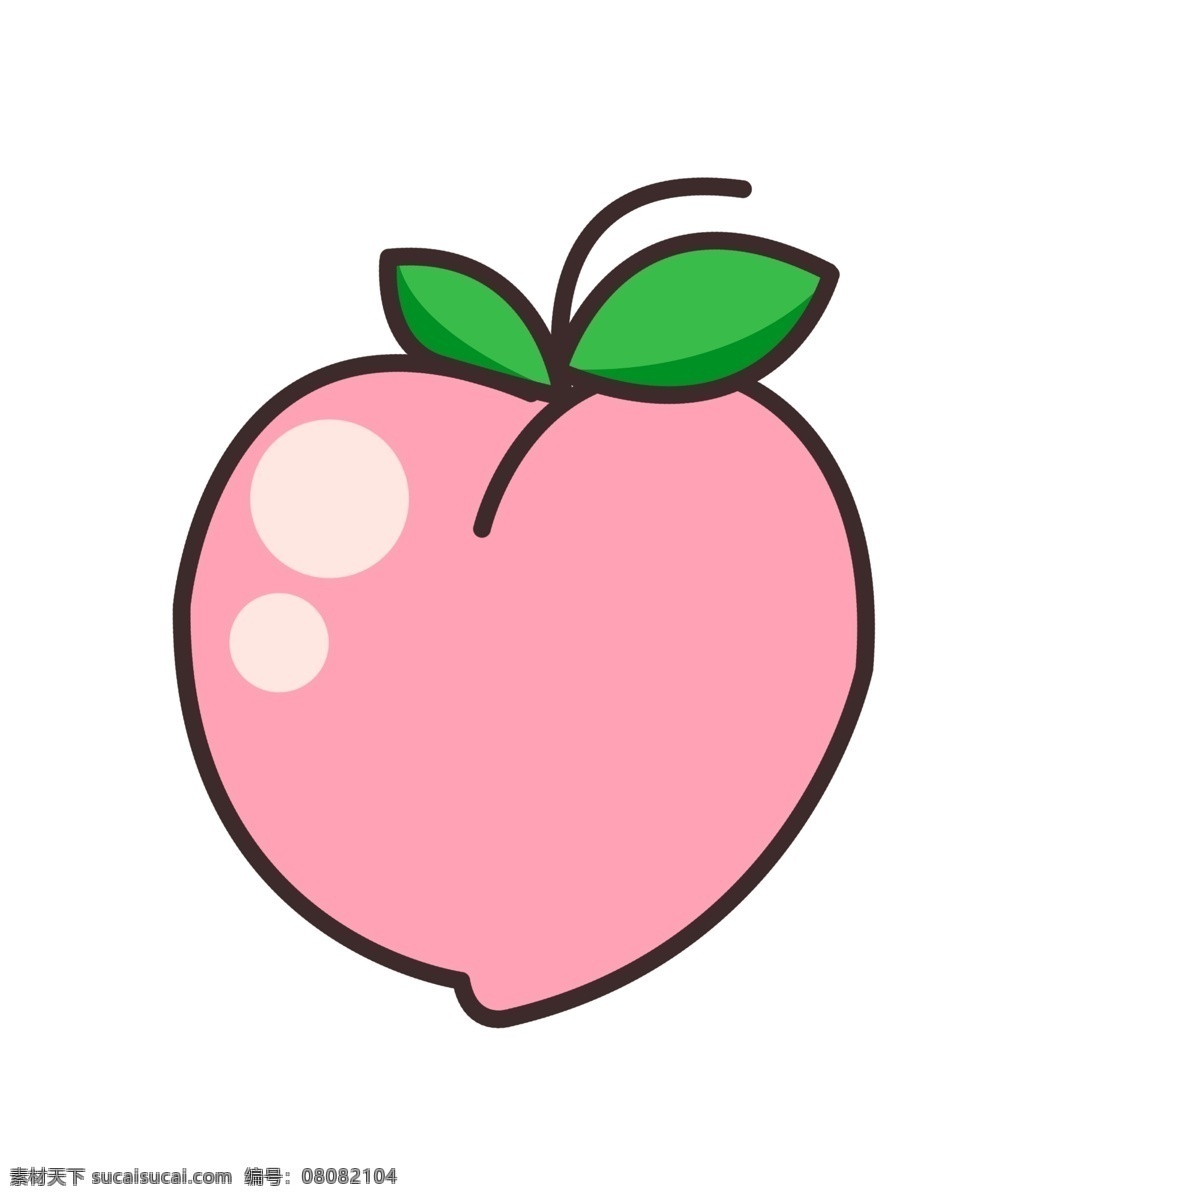 水果 图表 元素 桃子 ppt图标 简约风格 水果图标 海报图标 桃子水果 免 扣 图案